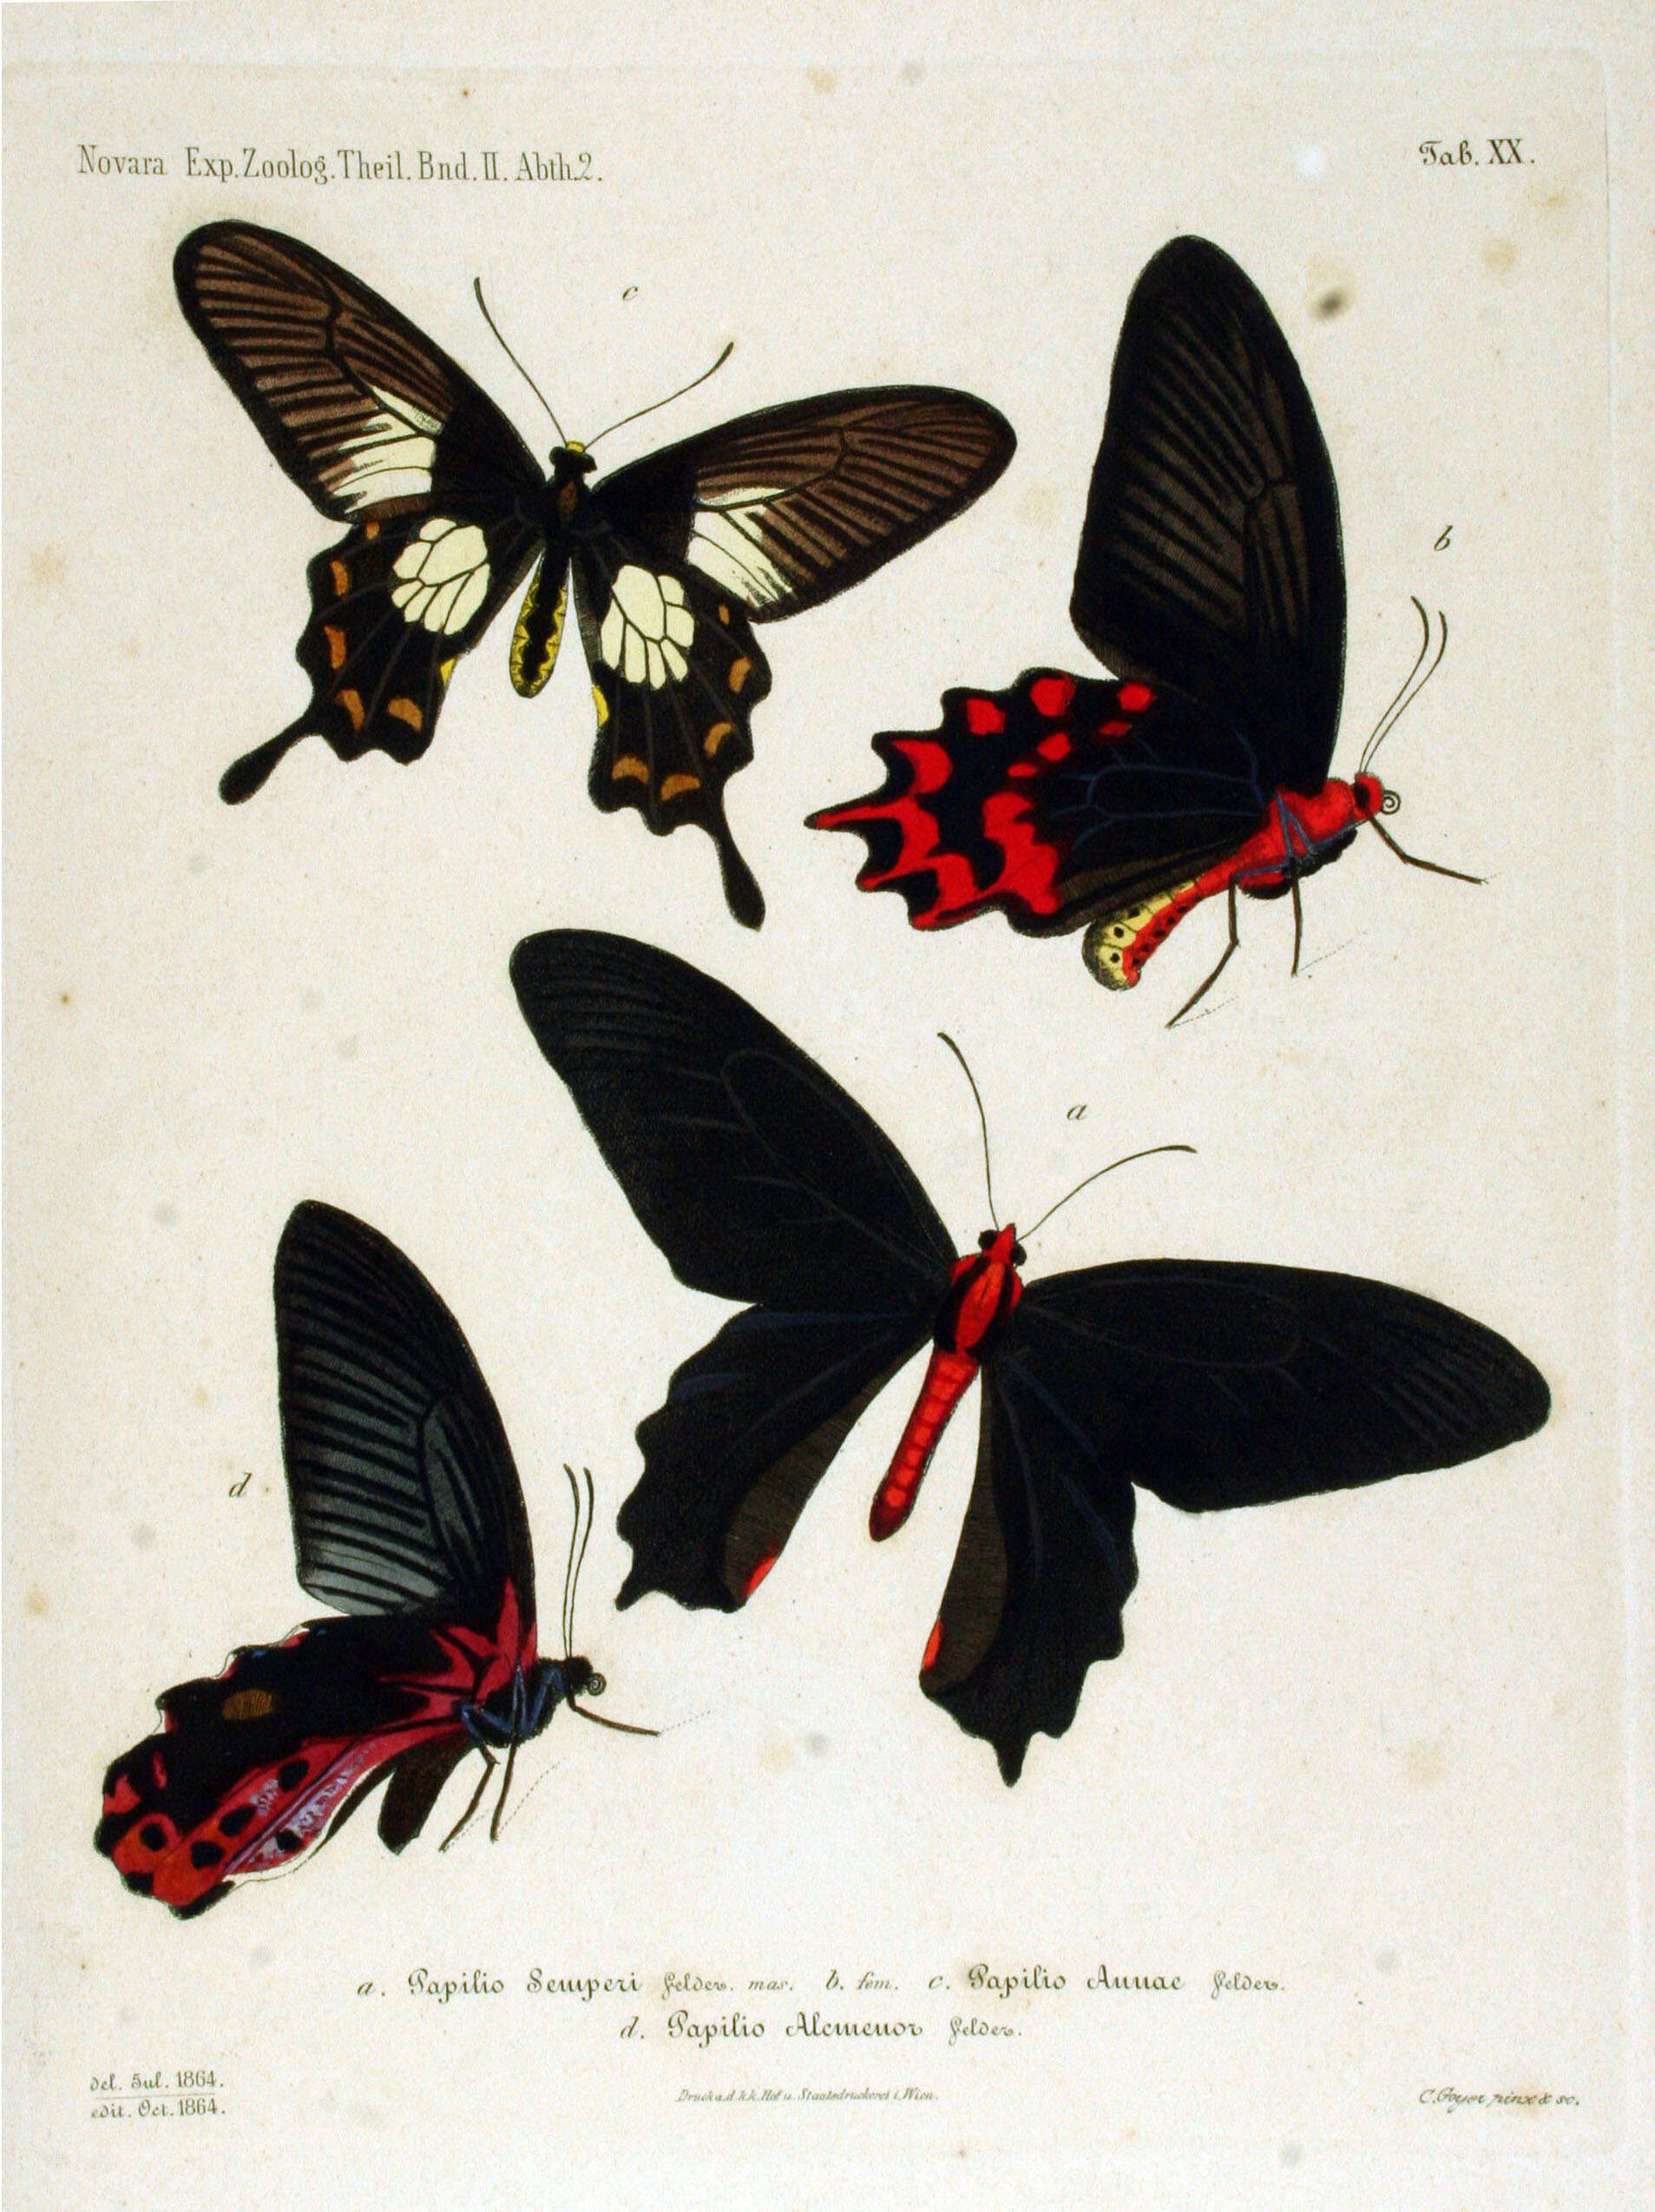 Sivun Papilio alcmenor Felder & Felder 1864 kuva